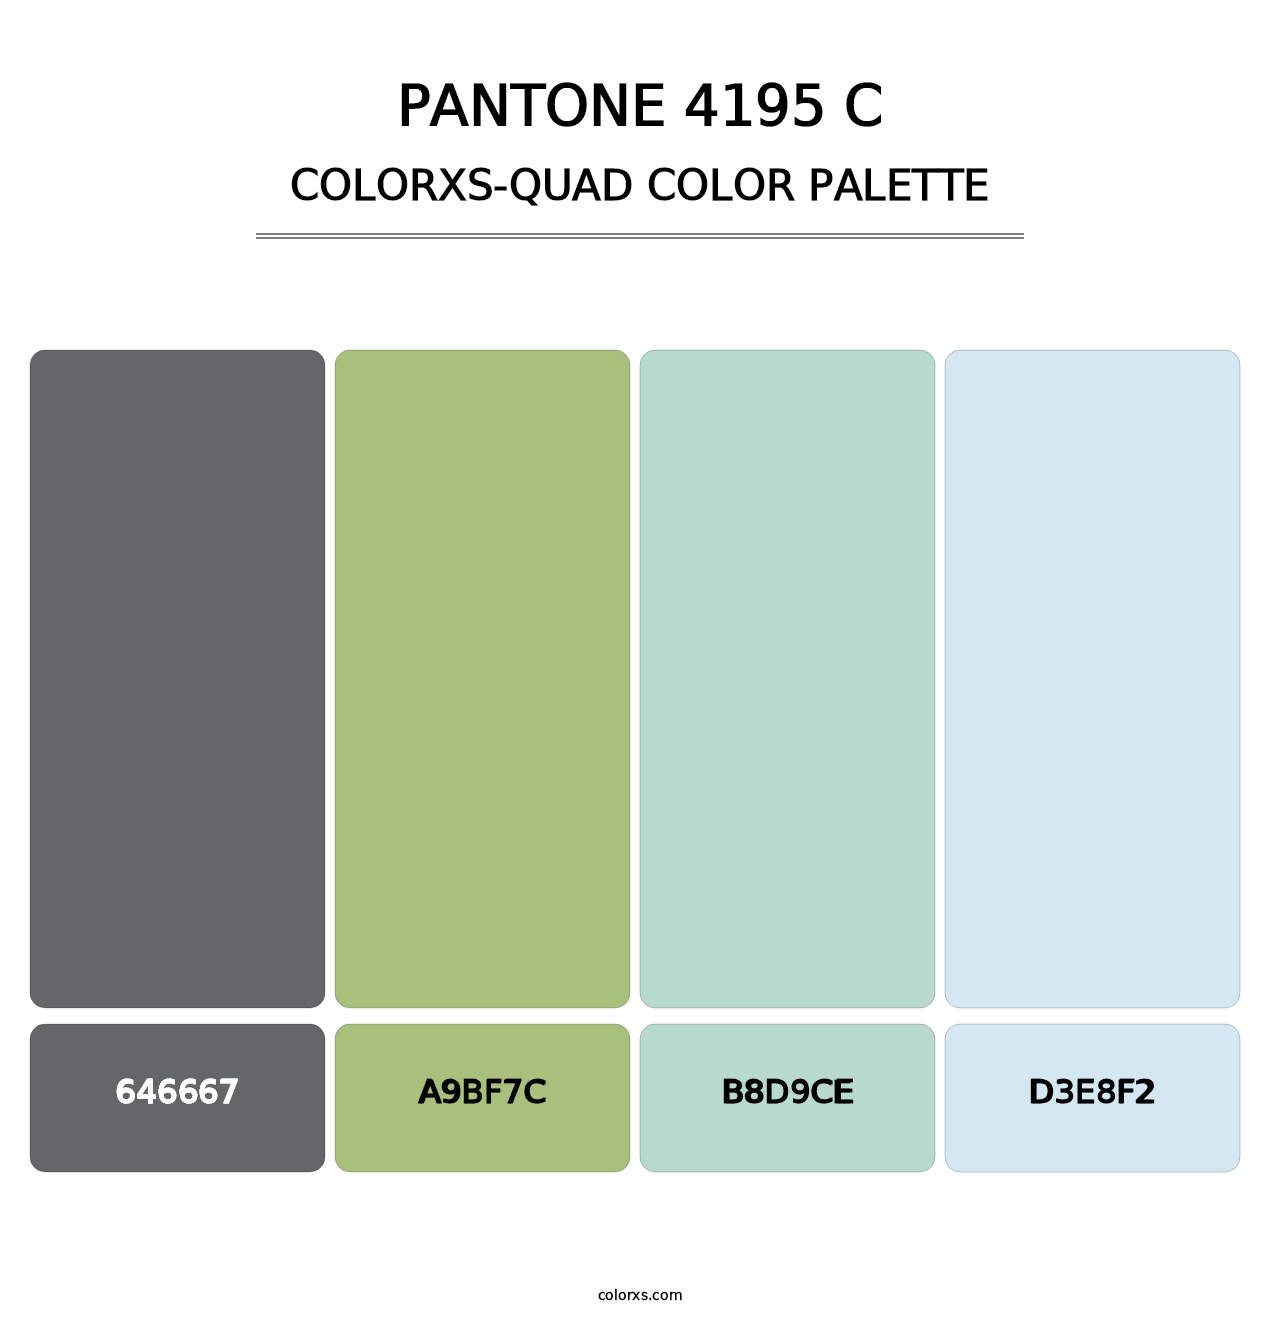 PANTONE 4195 C - Colorxs Quad Palette